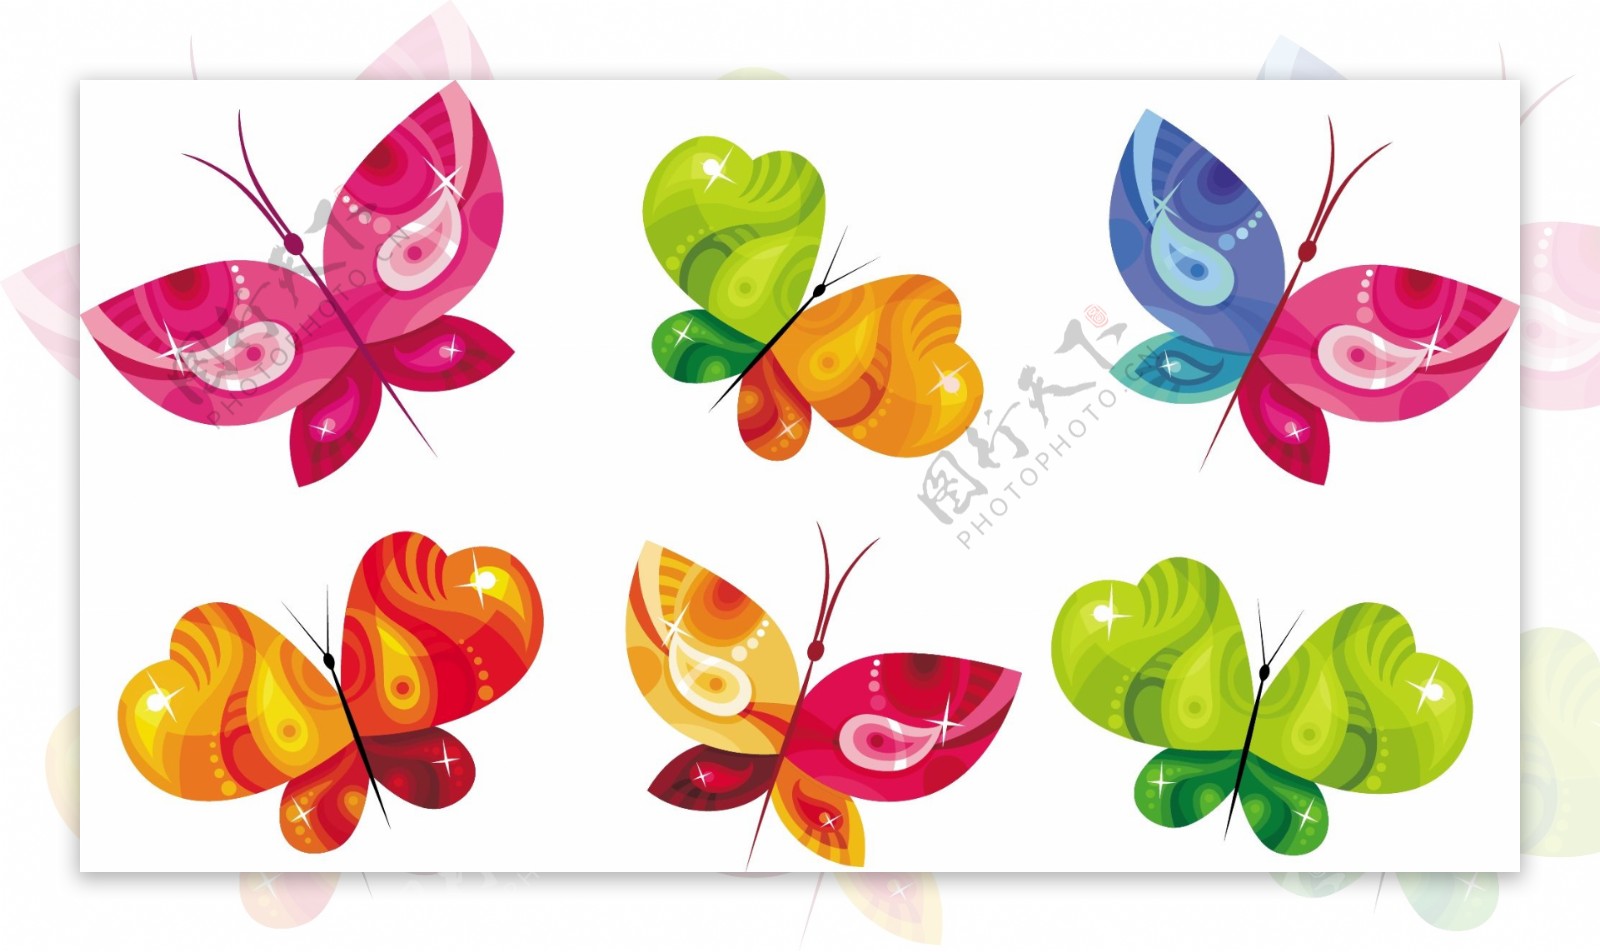 五彩缤纷的蝴蝶设计图标矢量素材